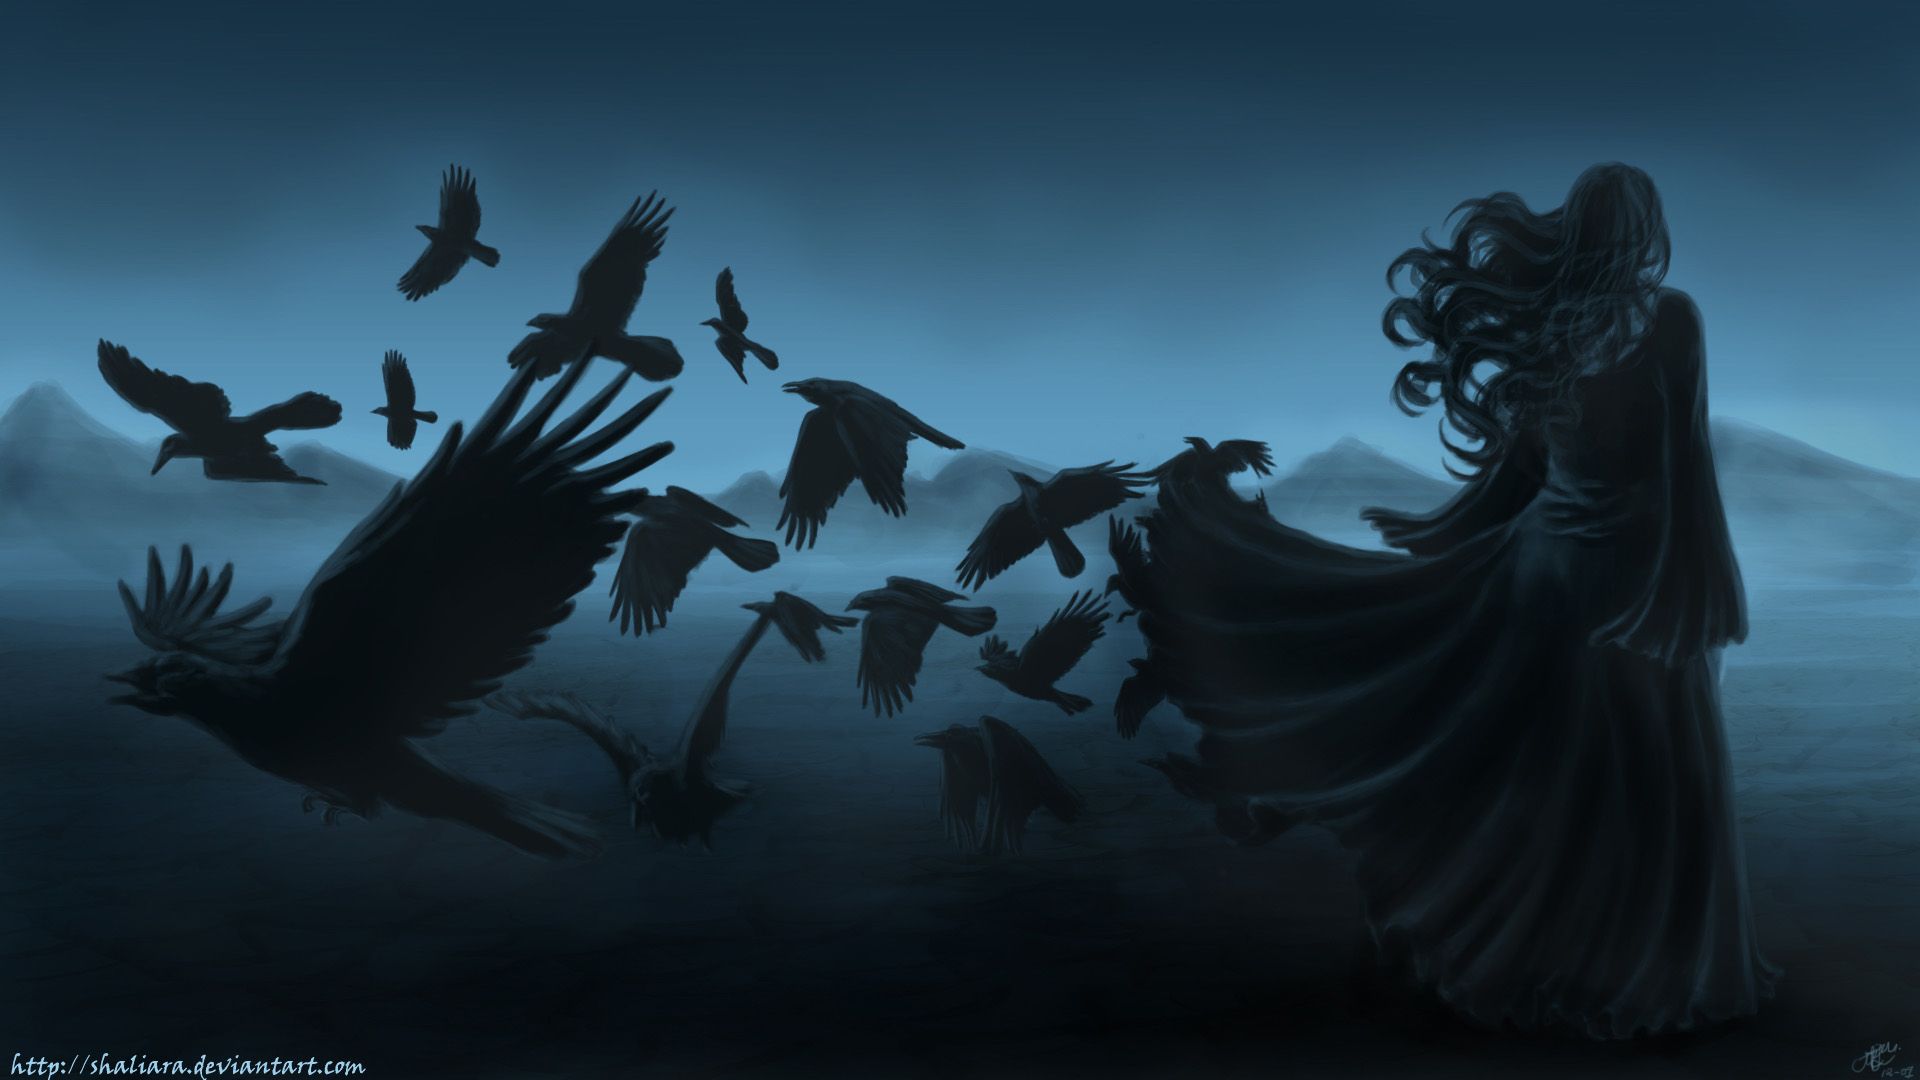 Dark horror gothic women raven poe birds art mood wallpaper ...